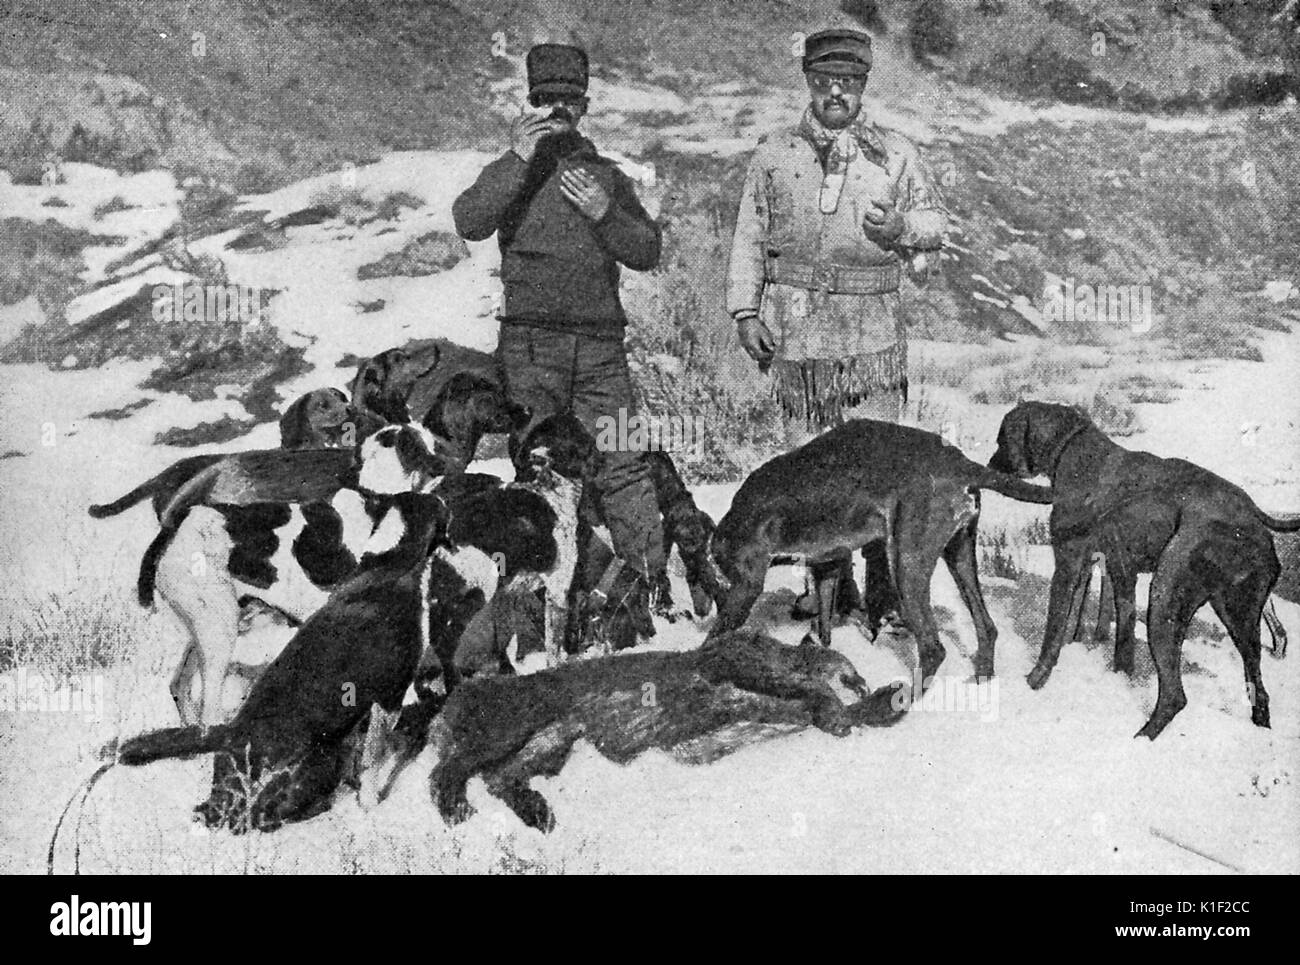 Theodore Roosevelt et un compagnon de chasse posent devant la première cougar tués sur leur expédition de chasse, une meute de chiens de chasse qui les entoure, 1884. Banque D'Images